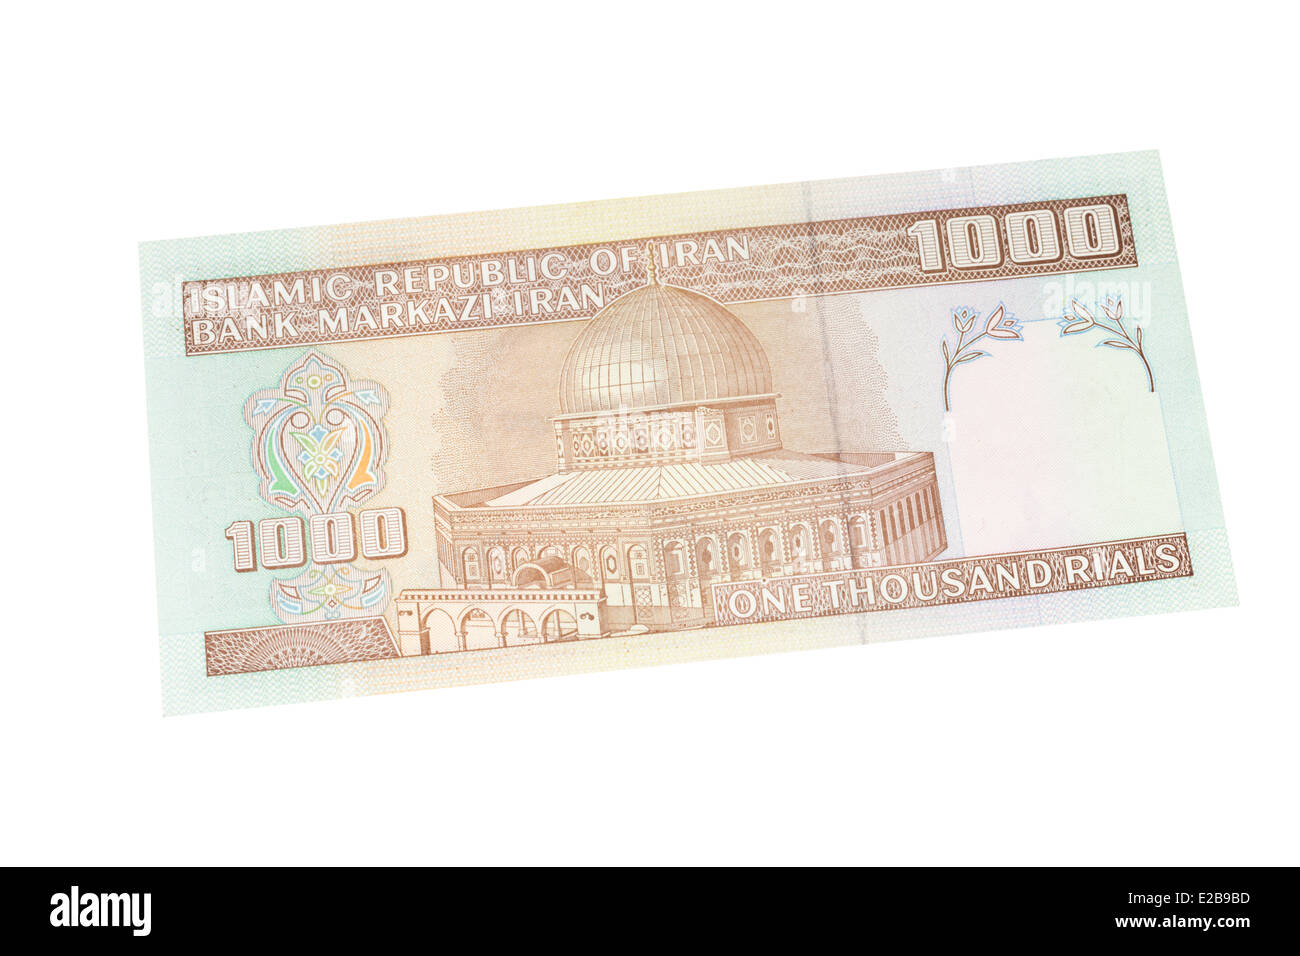 Rial iranien mille euros sur un fond blanc Banque D'Images